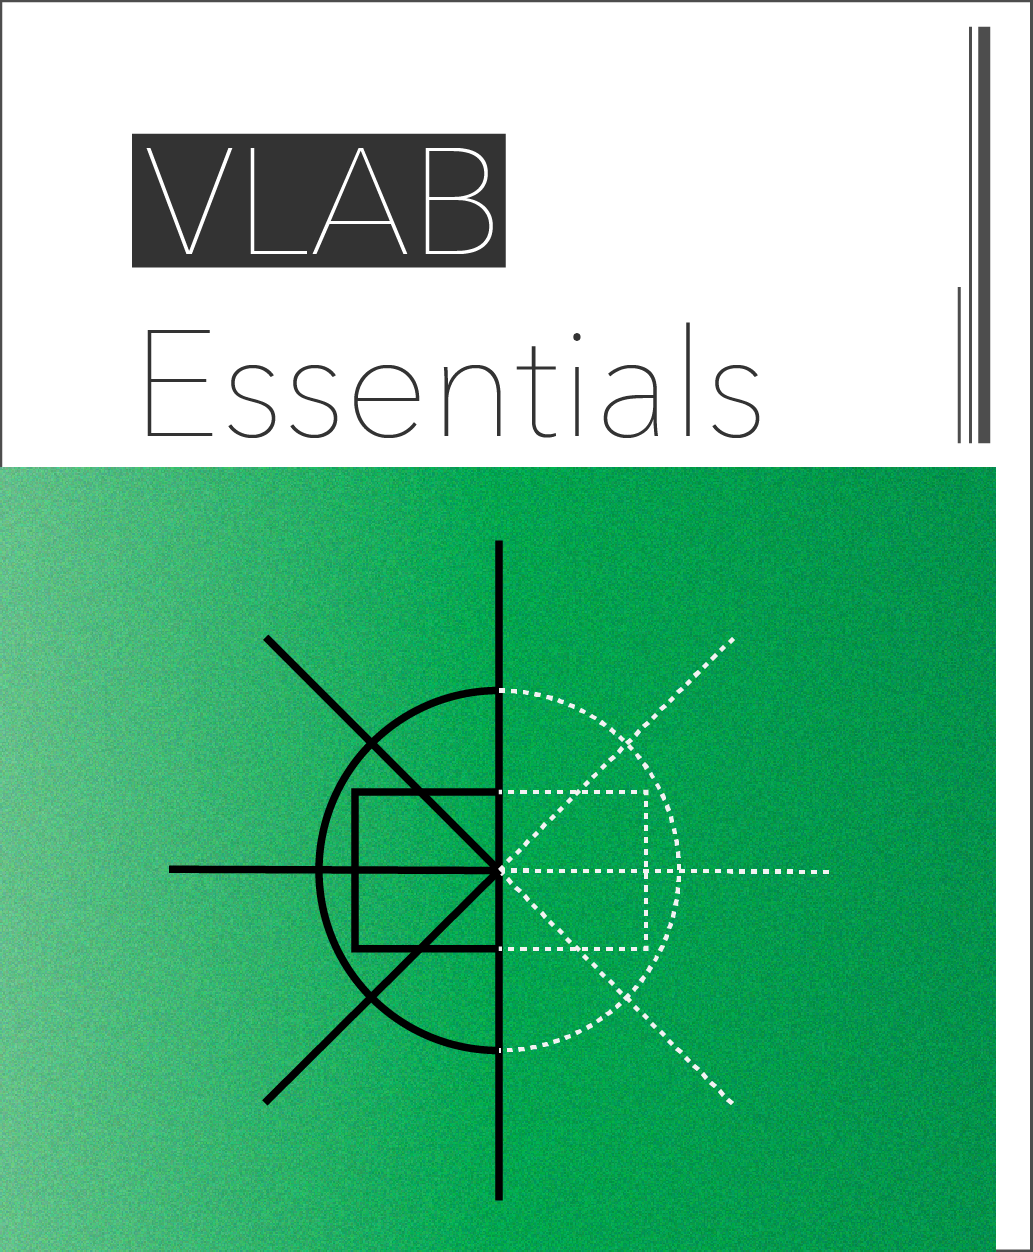 VLAB Essentials